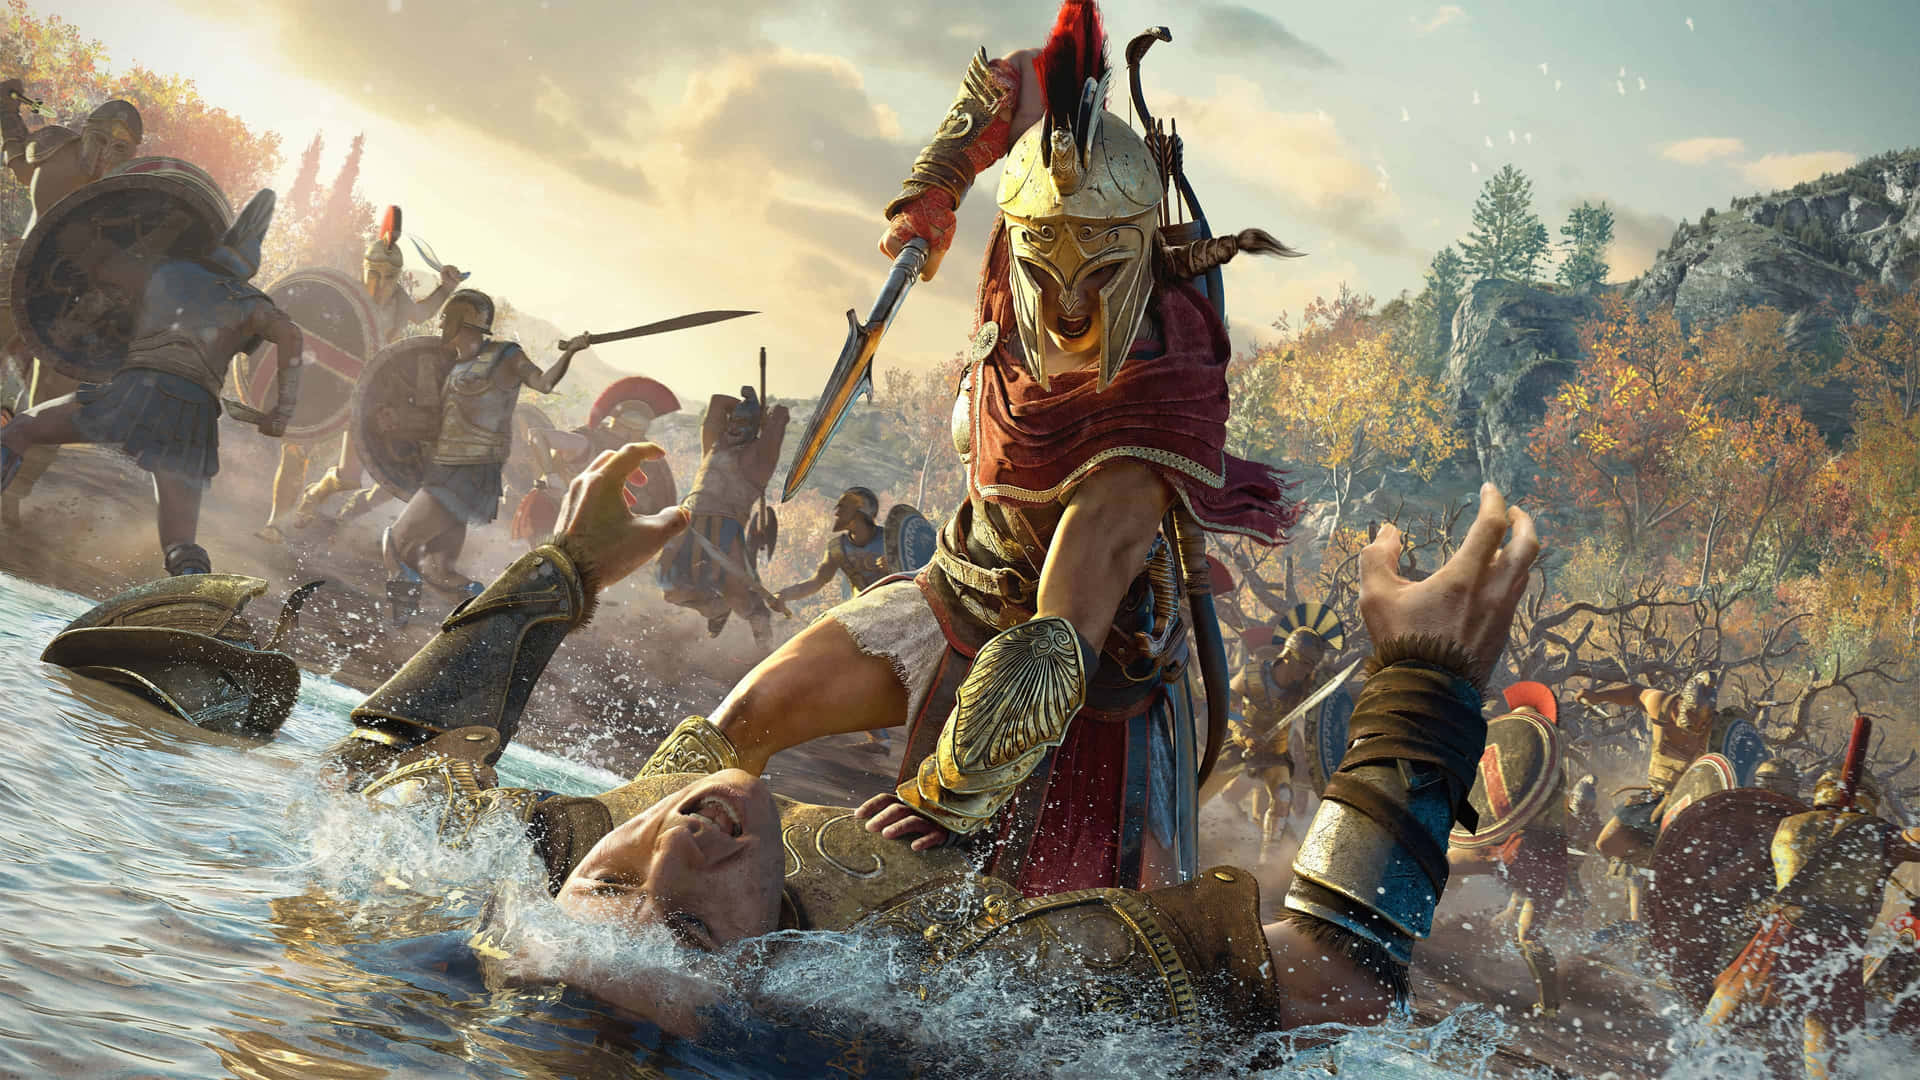 Entrena Ação Com O Papel De Parede De 4k Do Assassin's Creed Odyssey.